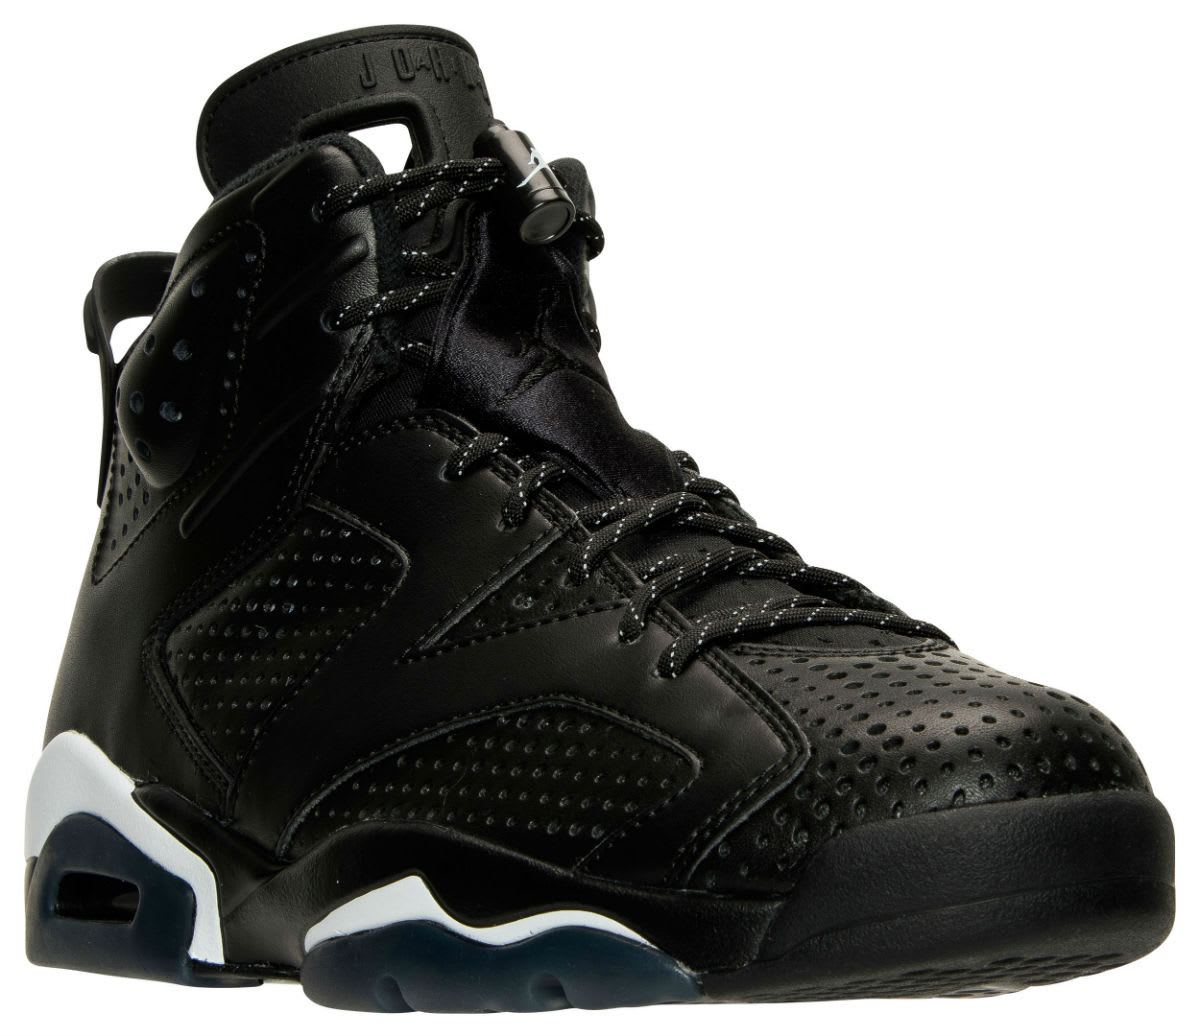 Air Jordan 6 Black Cat Release Date Angle 384664-020